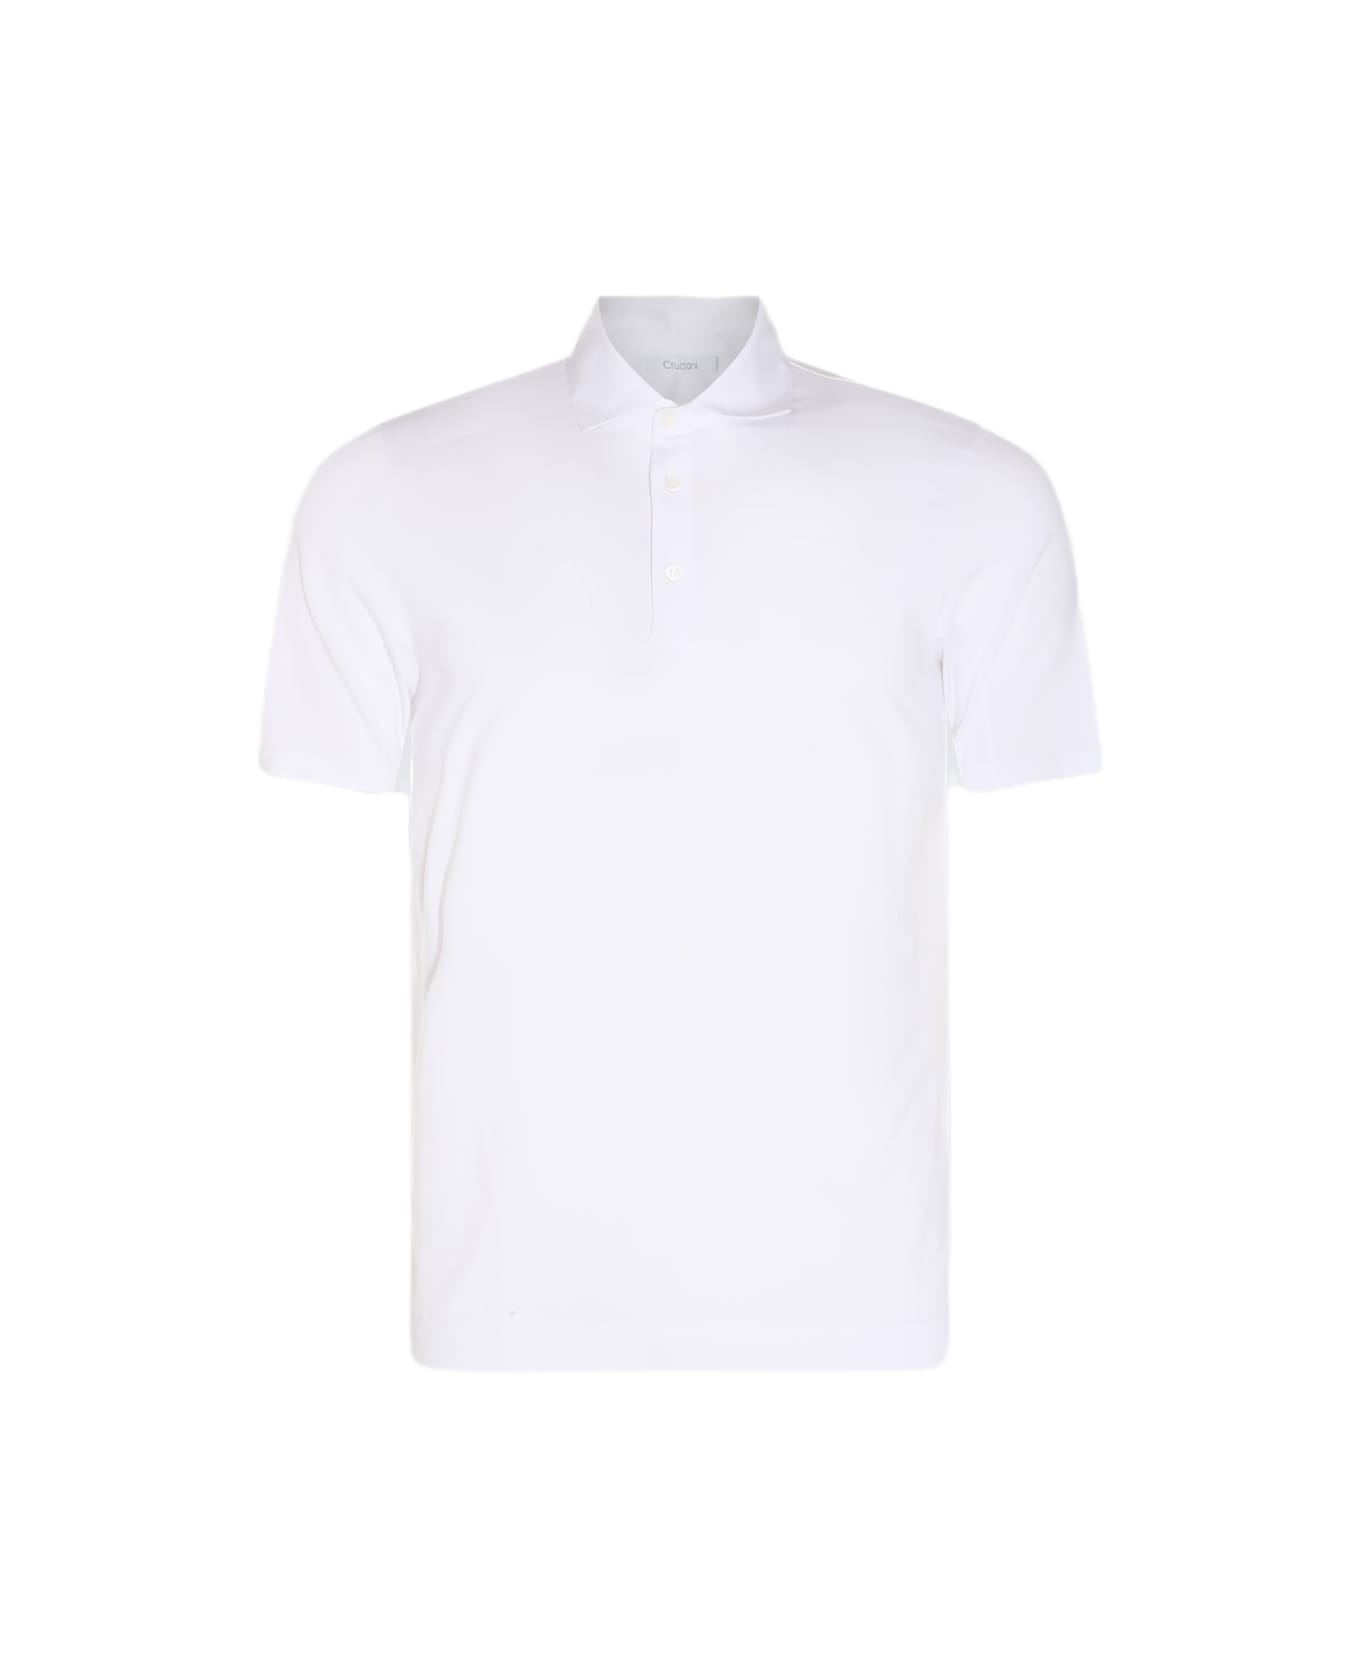 Cruciani White Cotton Polo Shirt - White